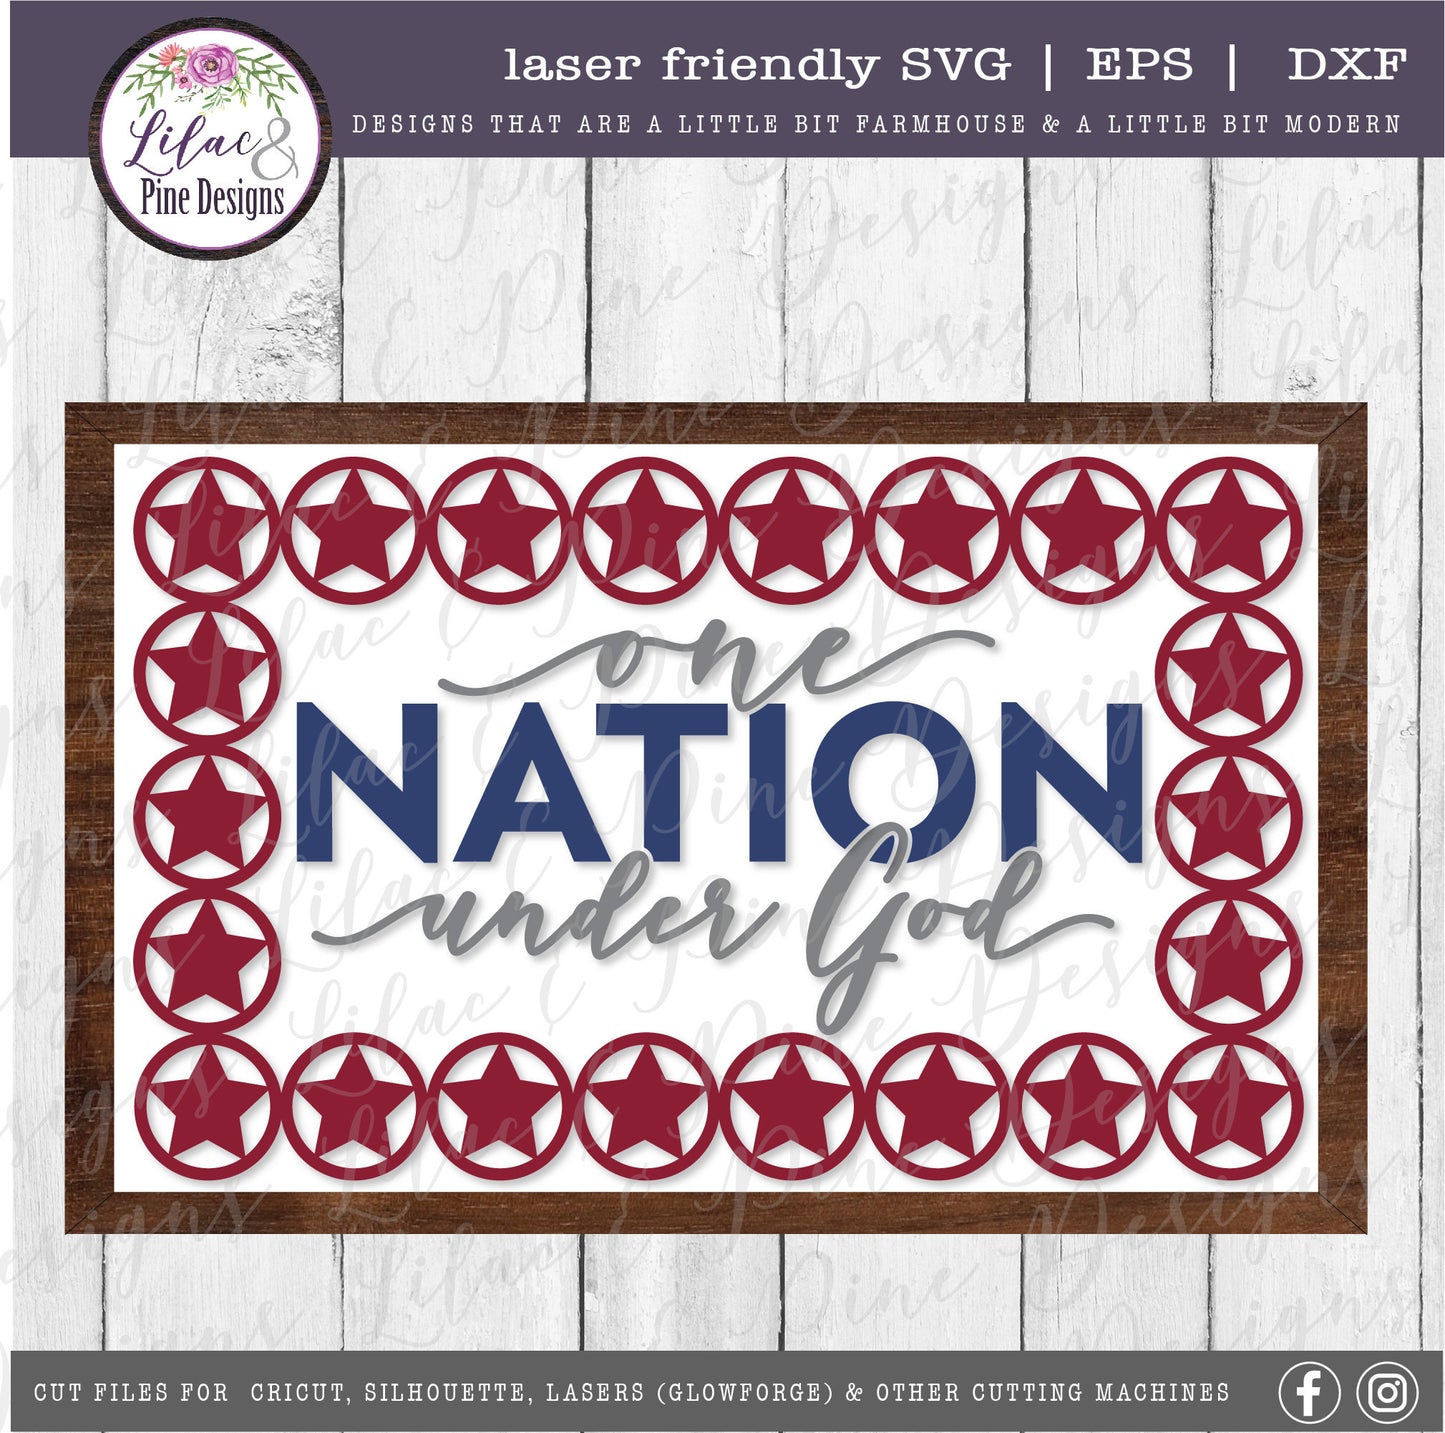 One Nation Under God SVG, July 4th decor, Patriotic sign, Stars and Stripes SVG, Independence Day sign svg, Glowforge Svg, laser cut file